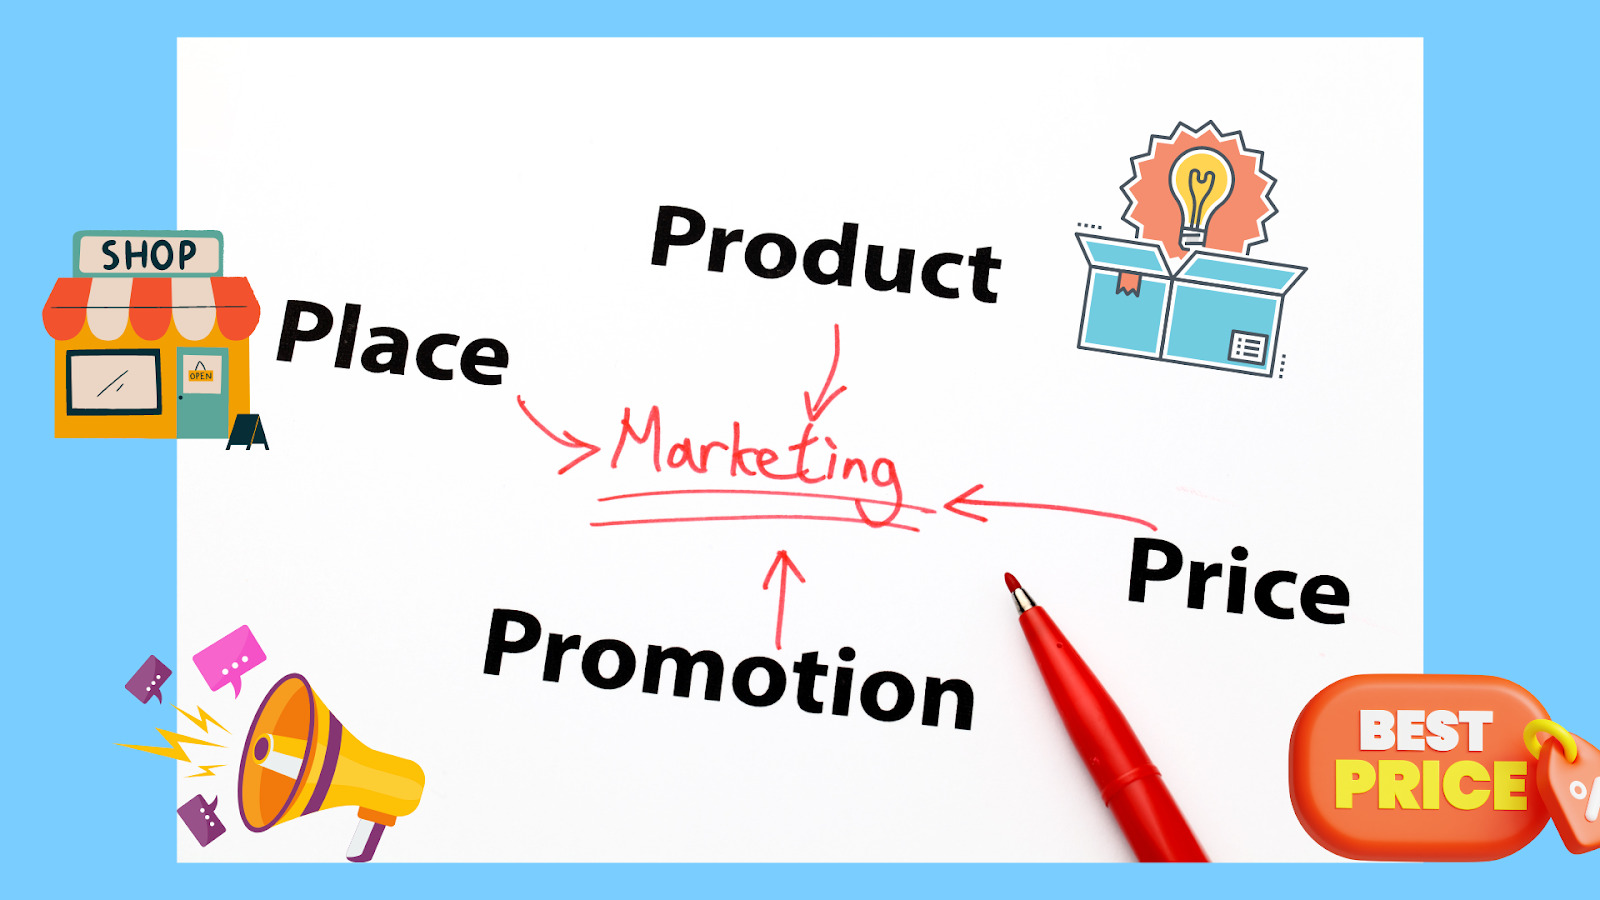 Marketing là một quá trình bao gồm phát triển, quảng bá, phân phối sản phẩm và dịch vụ.